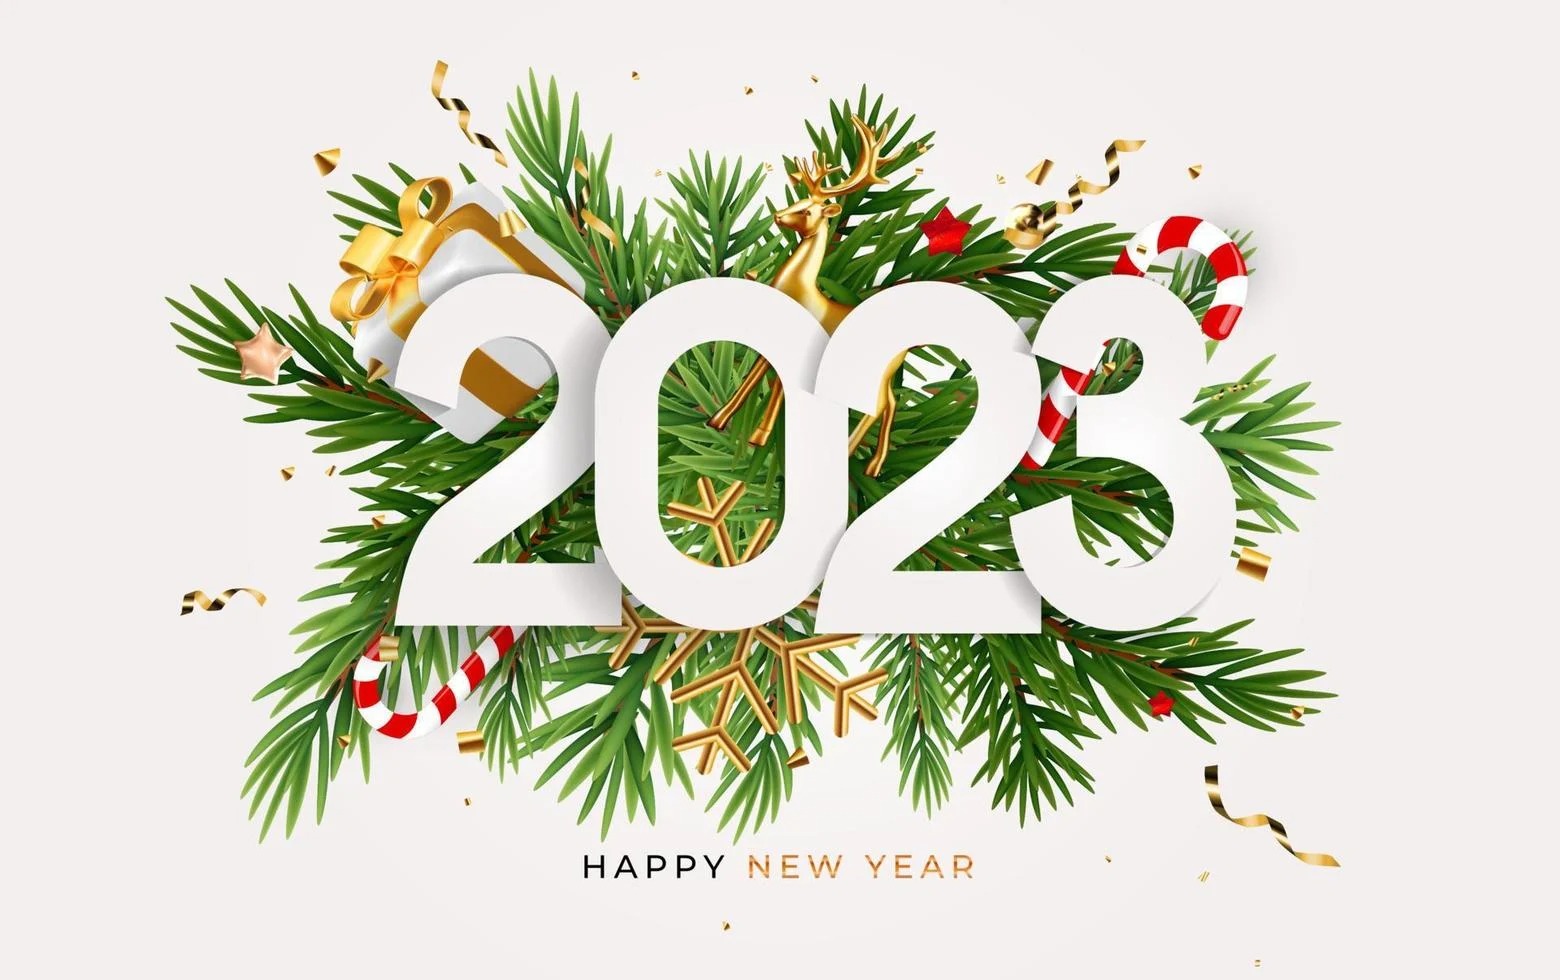 رسائل تهنئة بالسنة الجديدة 2023 New Year Messages مسجات تهاني السنة الجديدة